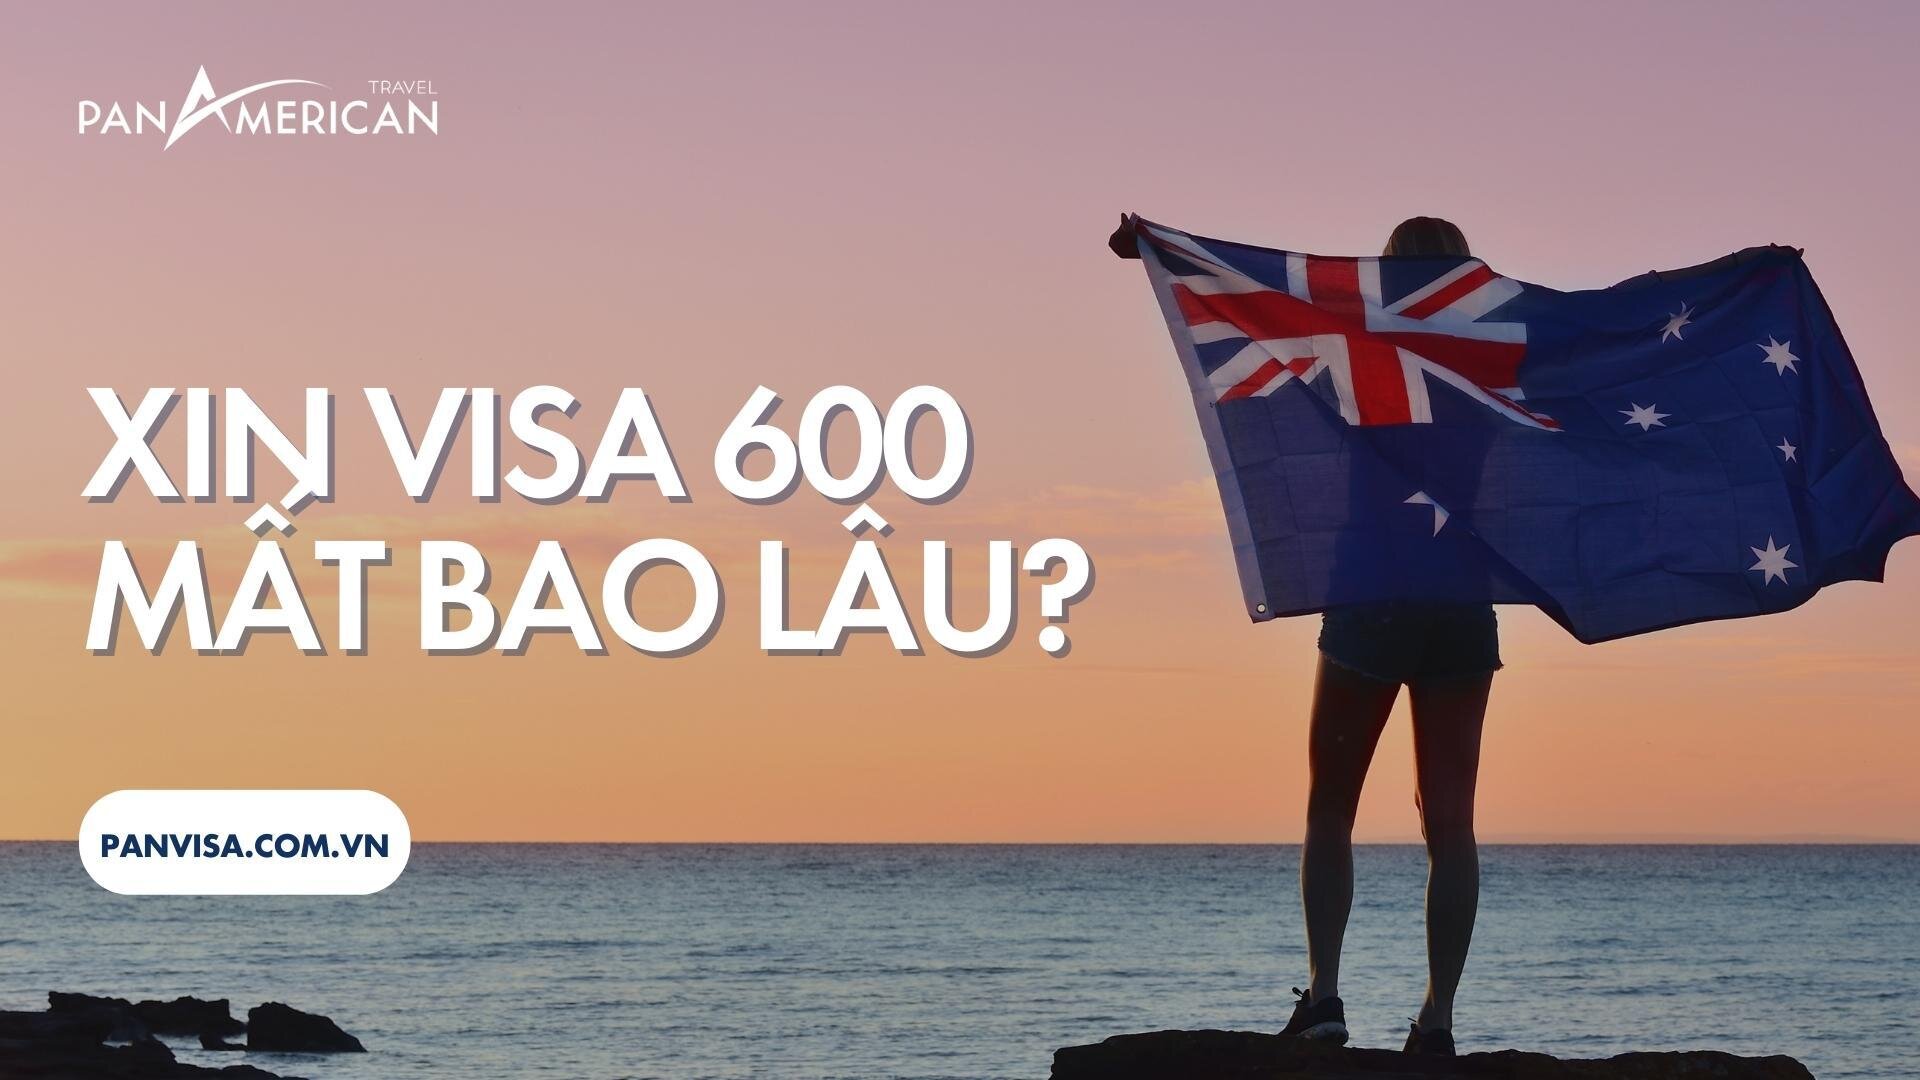 Xin visa 600 mất bao lâu?